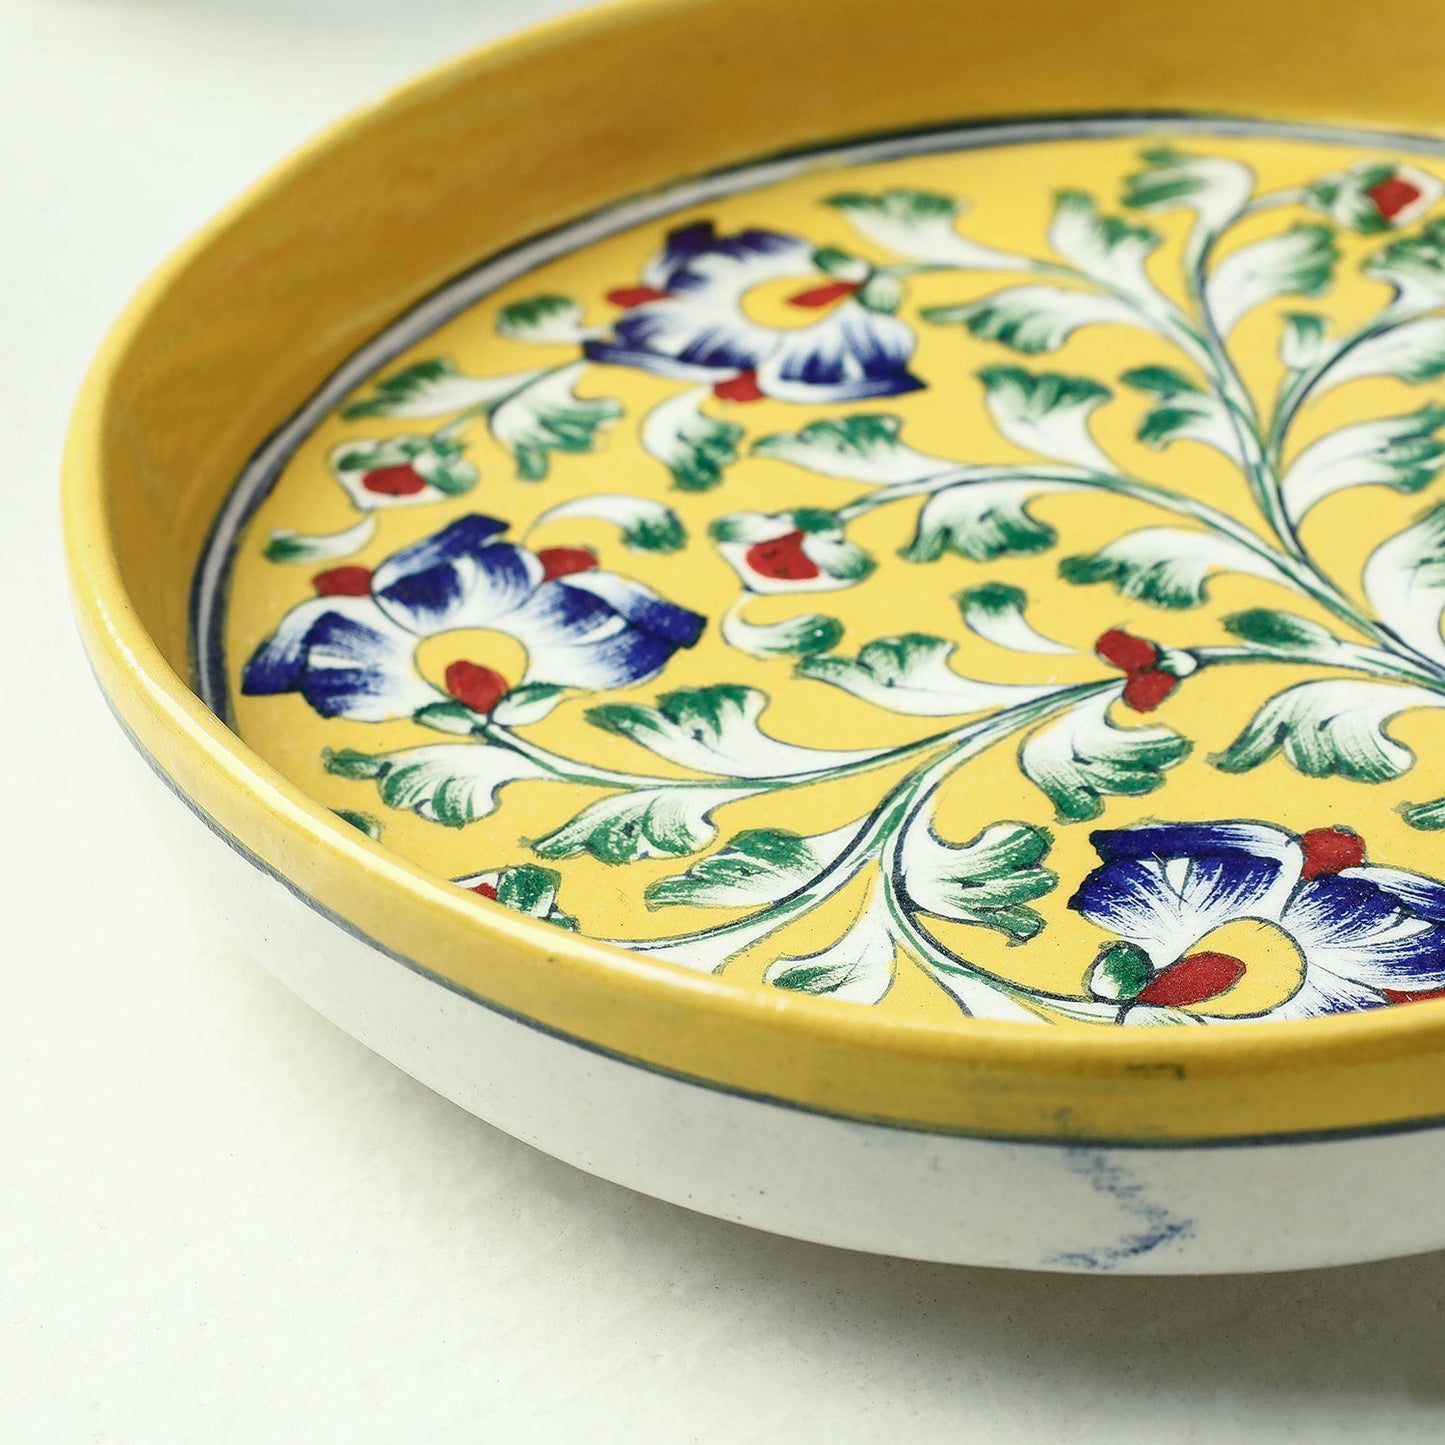 Original Blue Pottery Ceramic Serving Plate (9 x 9 in)